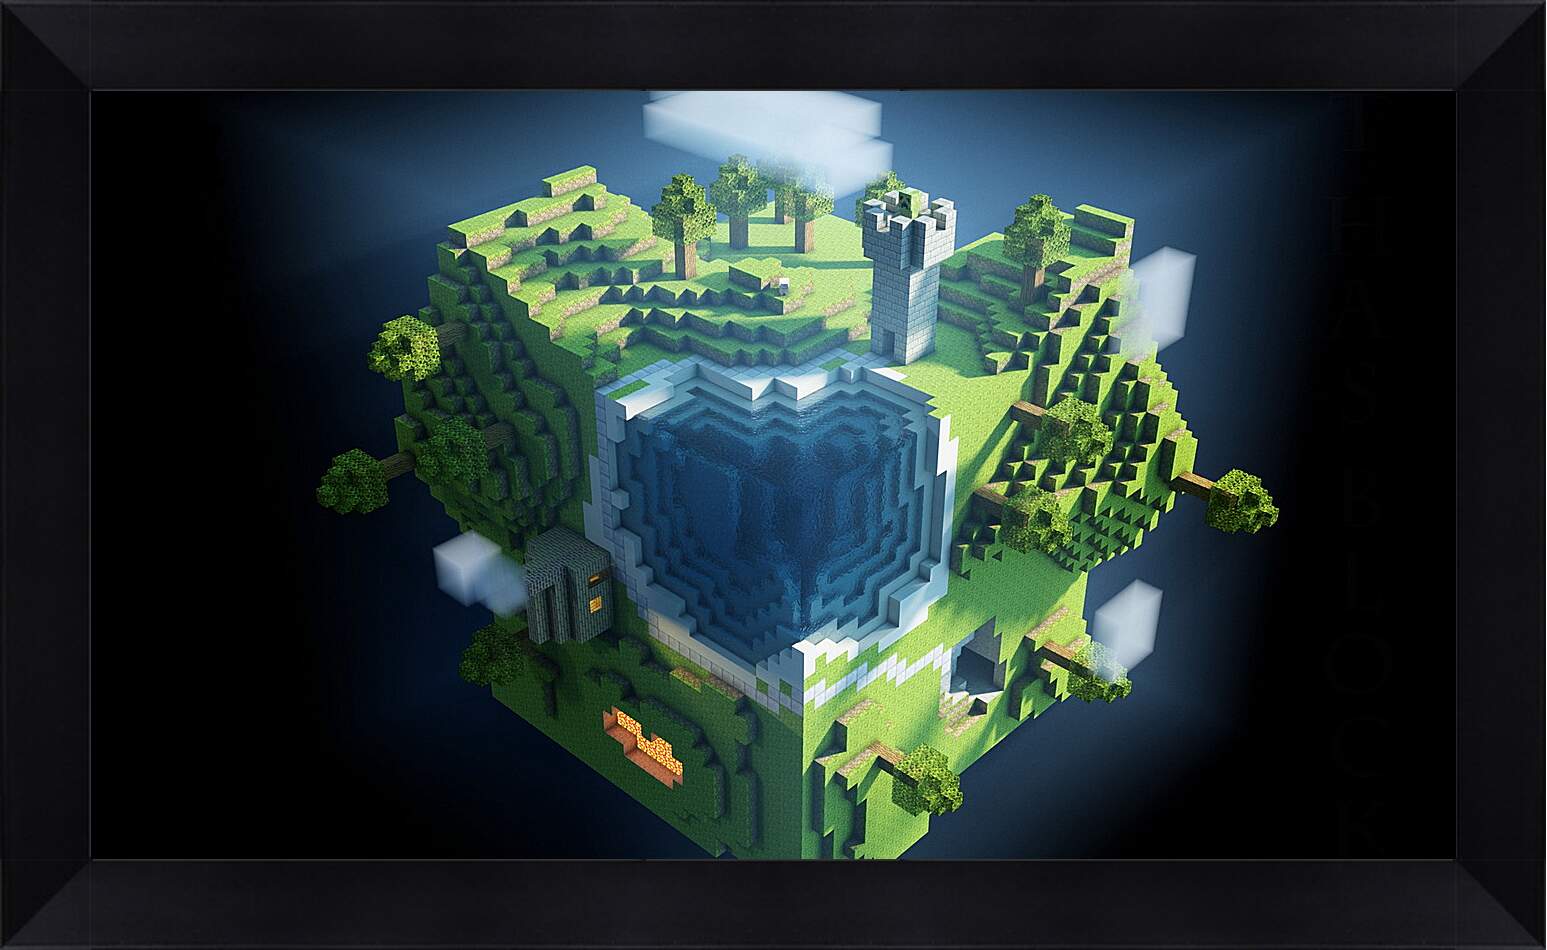 Картина в раме - minecraft, planet, cube